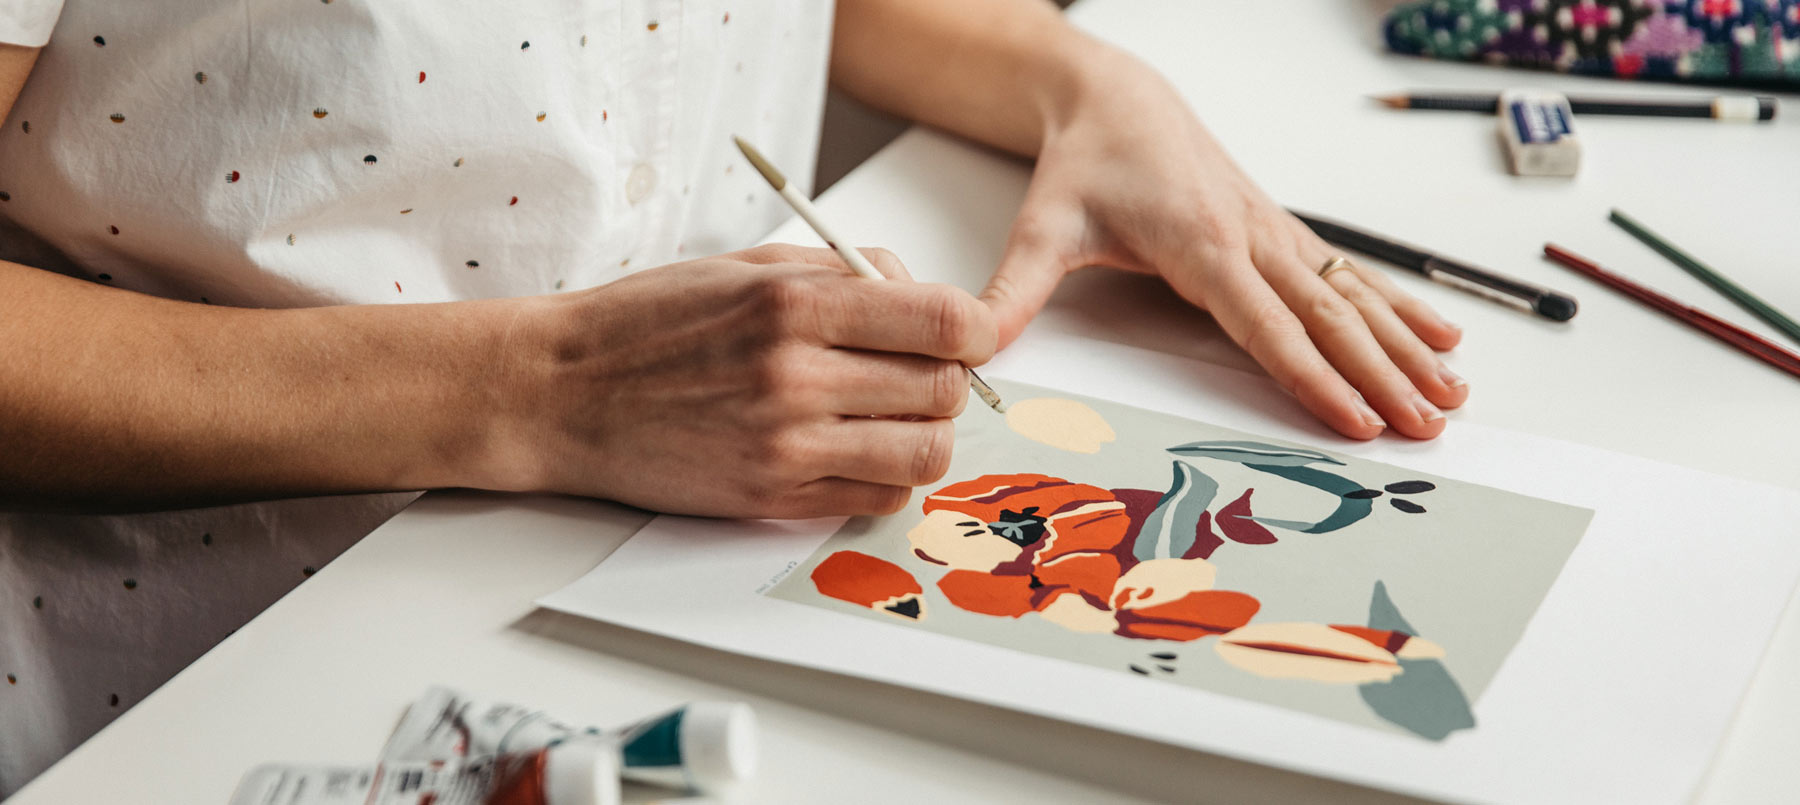 Meet the Maker: Illustrator Camille Shu